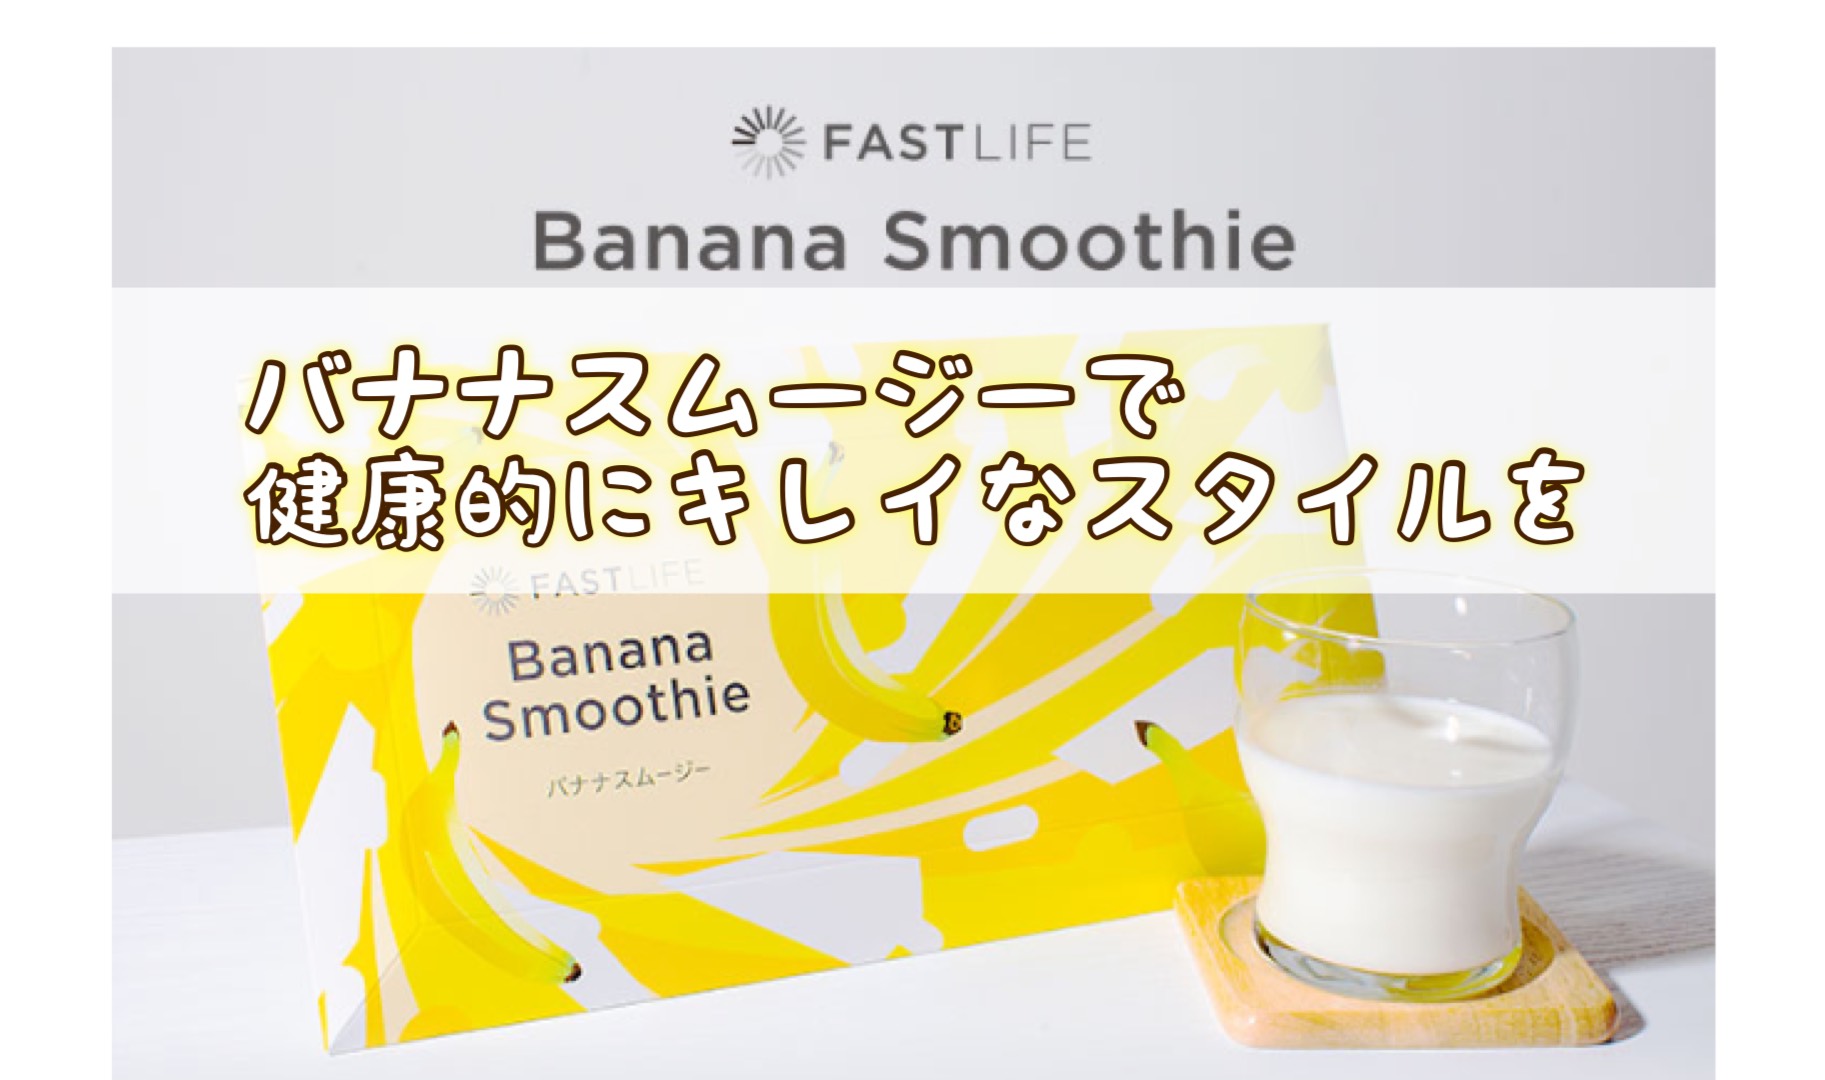 FASTLIFEのコンブチャ入りバナナスムージーで美容ダイエット、効果口コミ